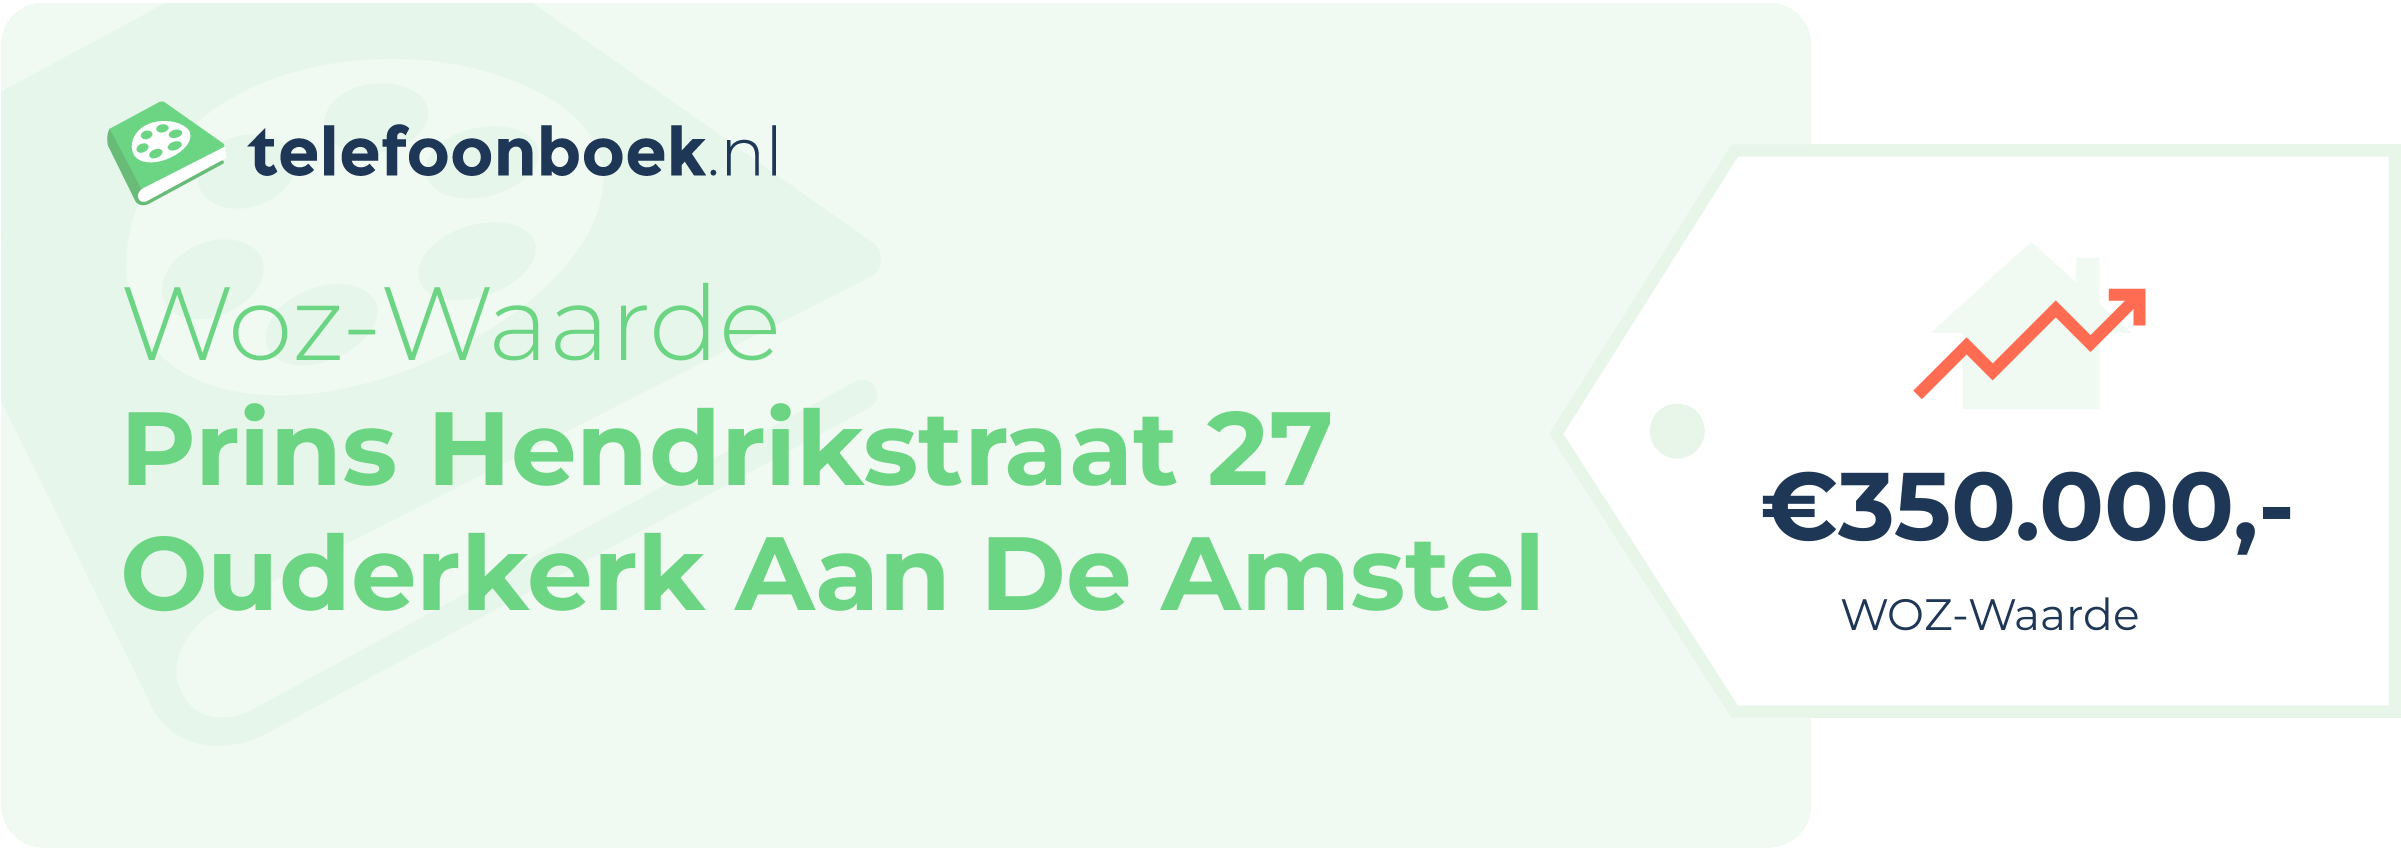 WOZ-waarde Prins Hendrikstraat 27 Ouderkerk Aan De Amstel